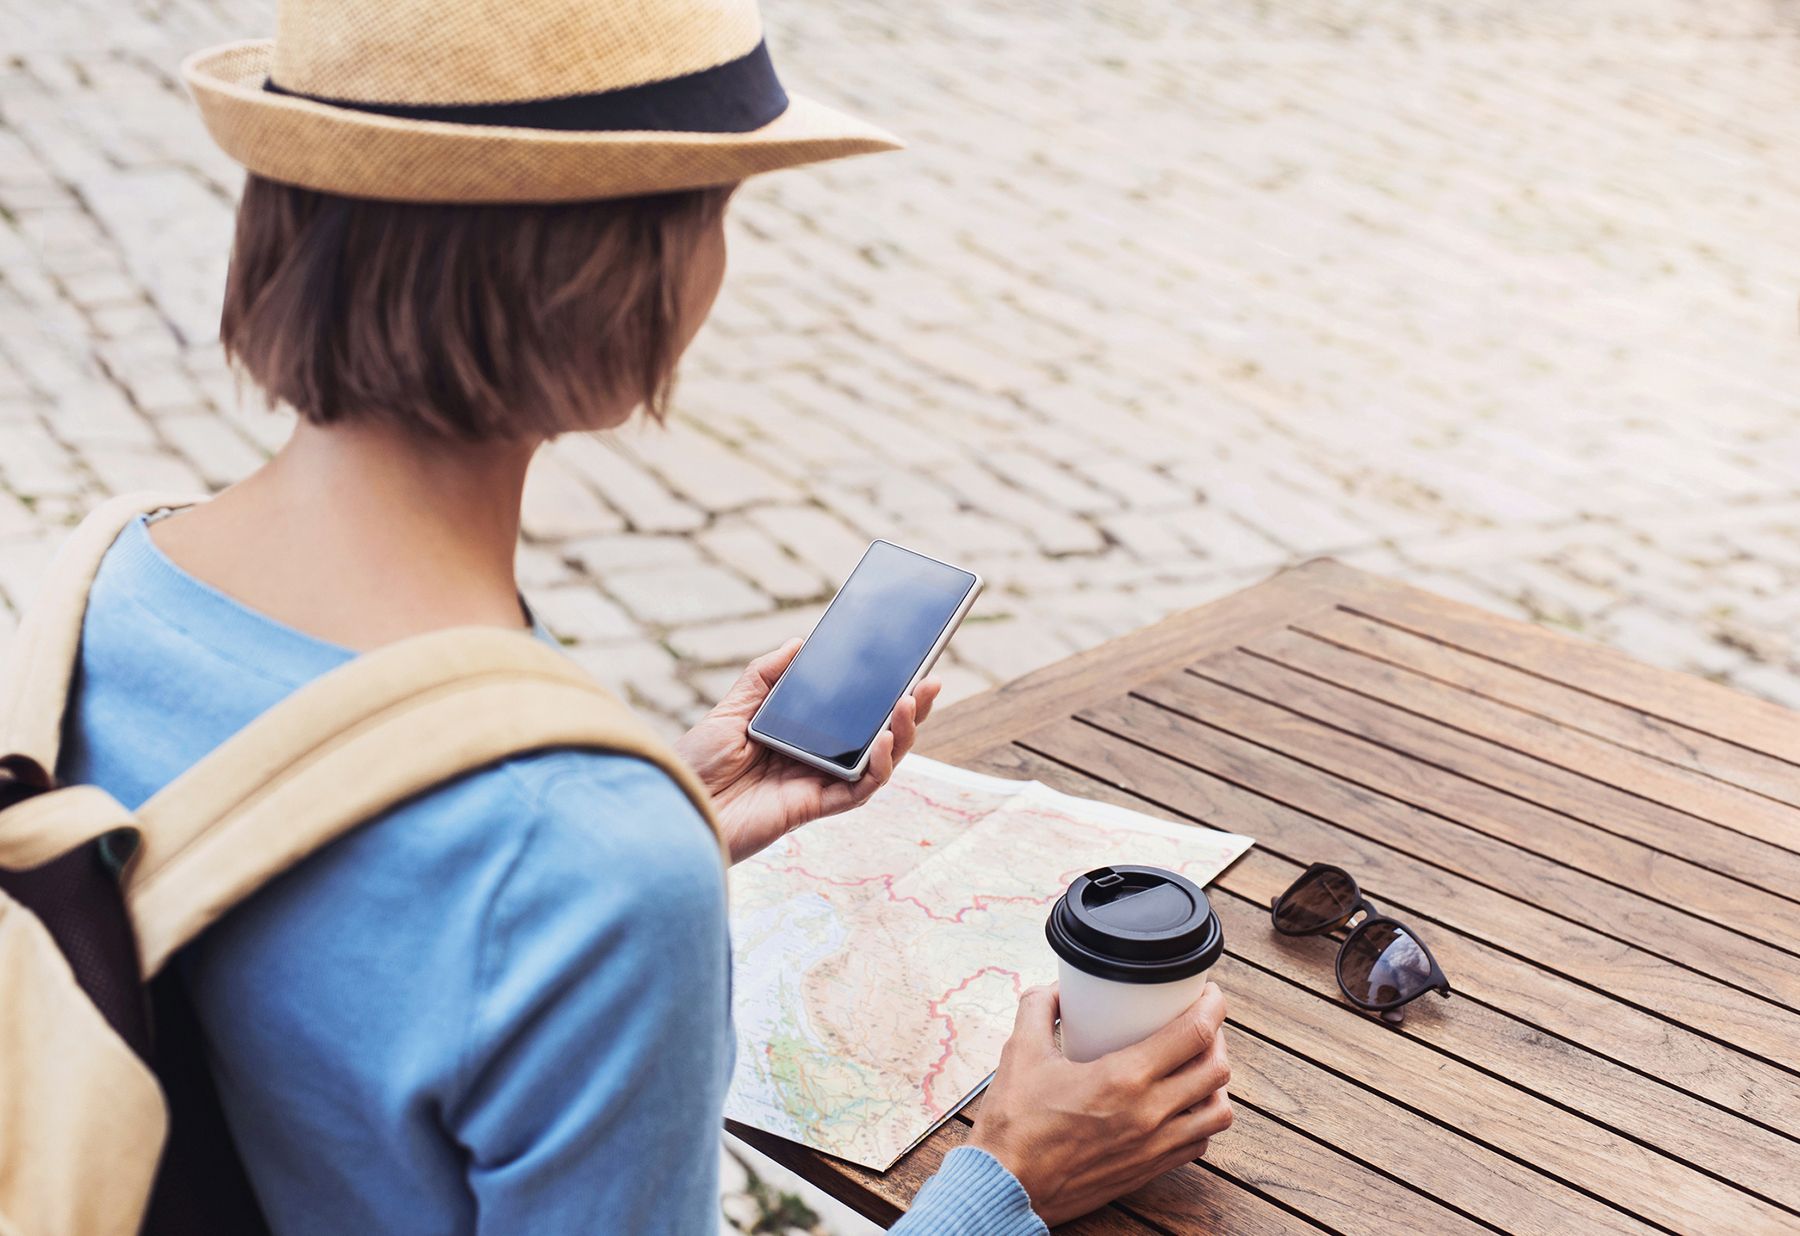 De 6 essentiële zaken die uw reisverzekering volgens een expert moet dekken